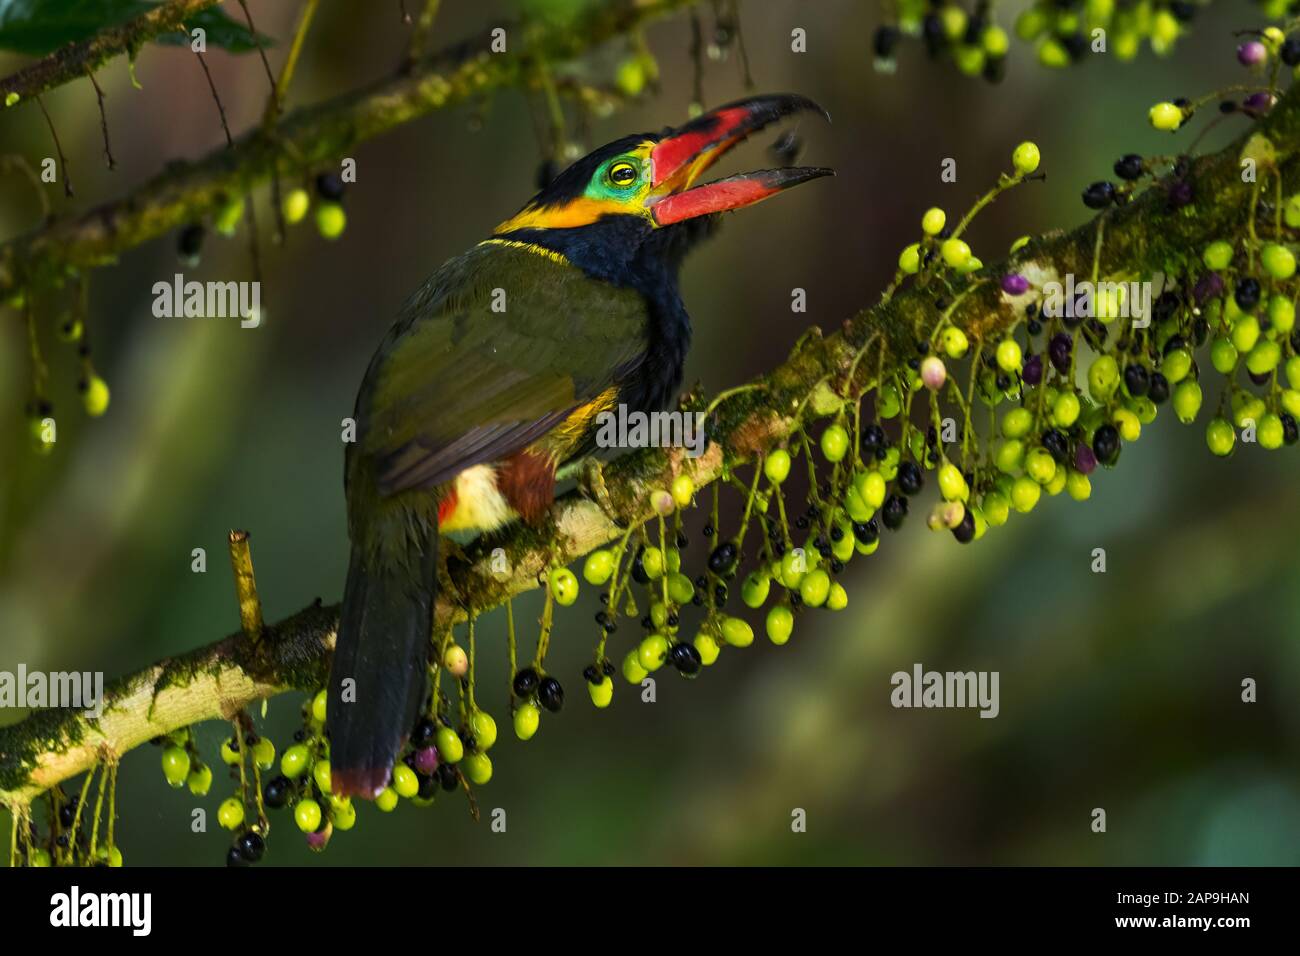 Toucanet de Collared d'or - Selenidera reinwardtii, beau toucanet timide des forêts sud-américaines, Sumaco sauvage, Équateur. Banque D'Images